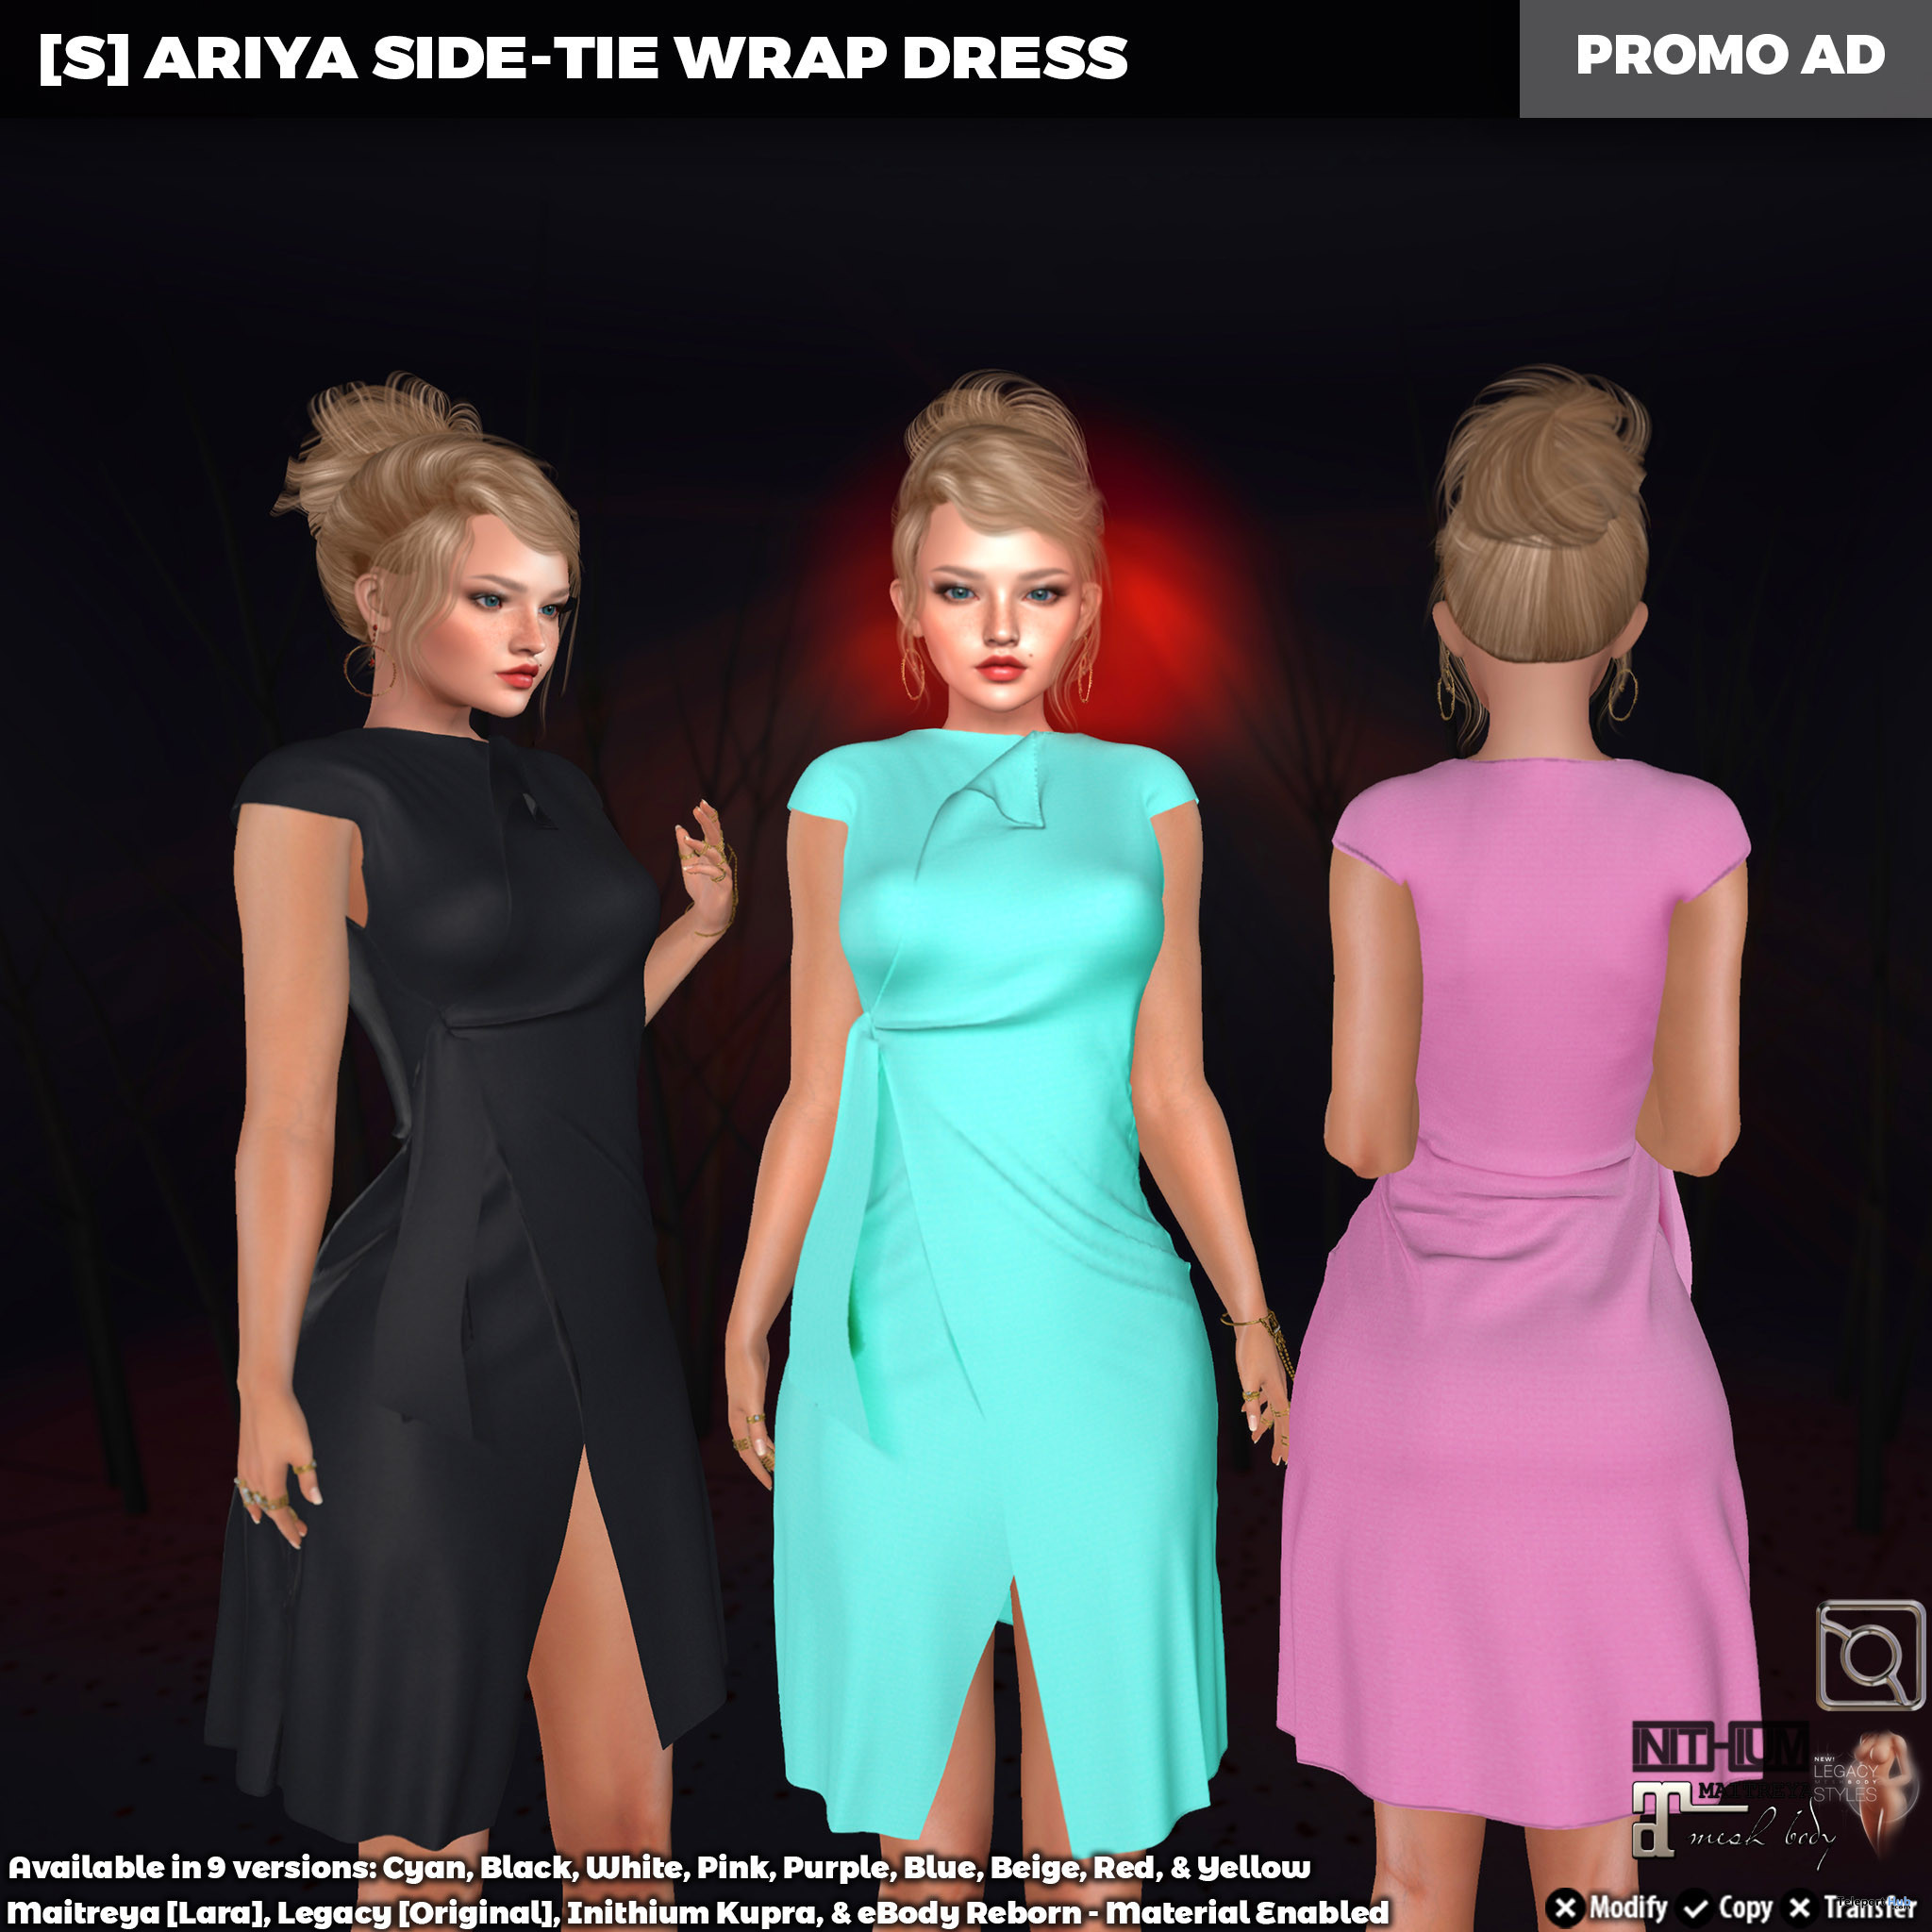 New Release: [S] Ariya Side-Tie Wrap Dress by [satus Inc] - Teleport Hub - teleporthub.com